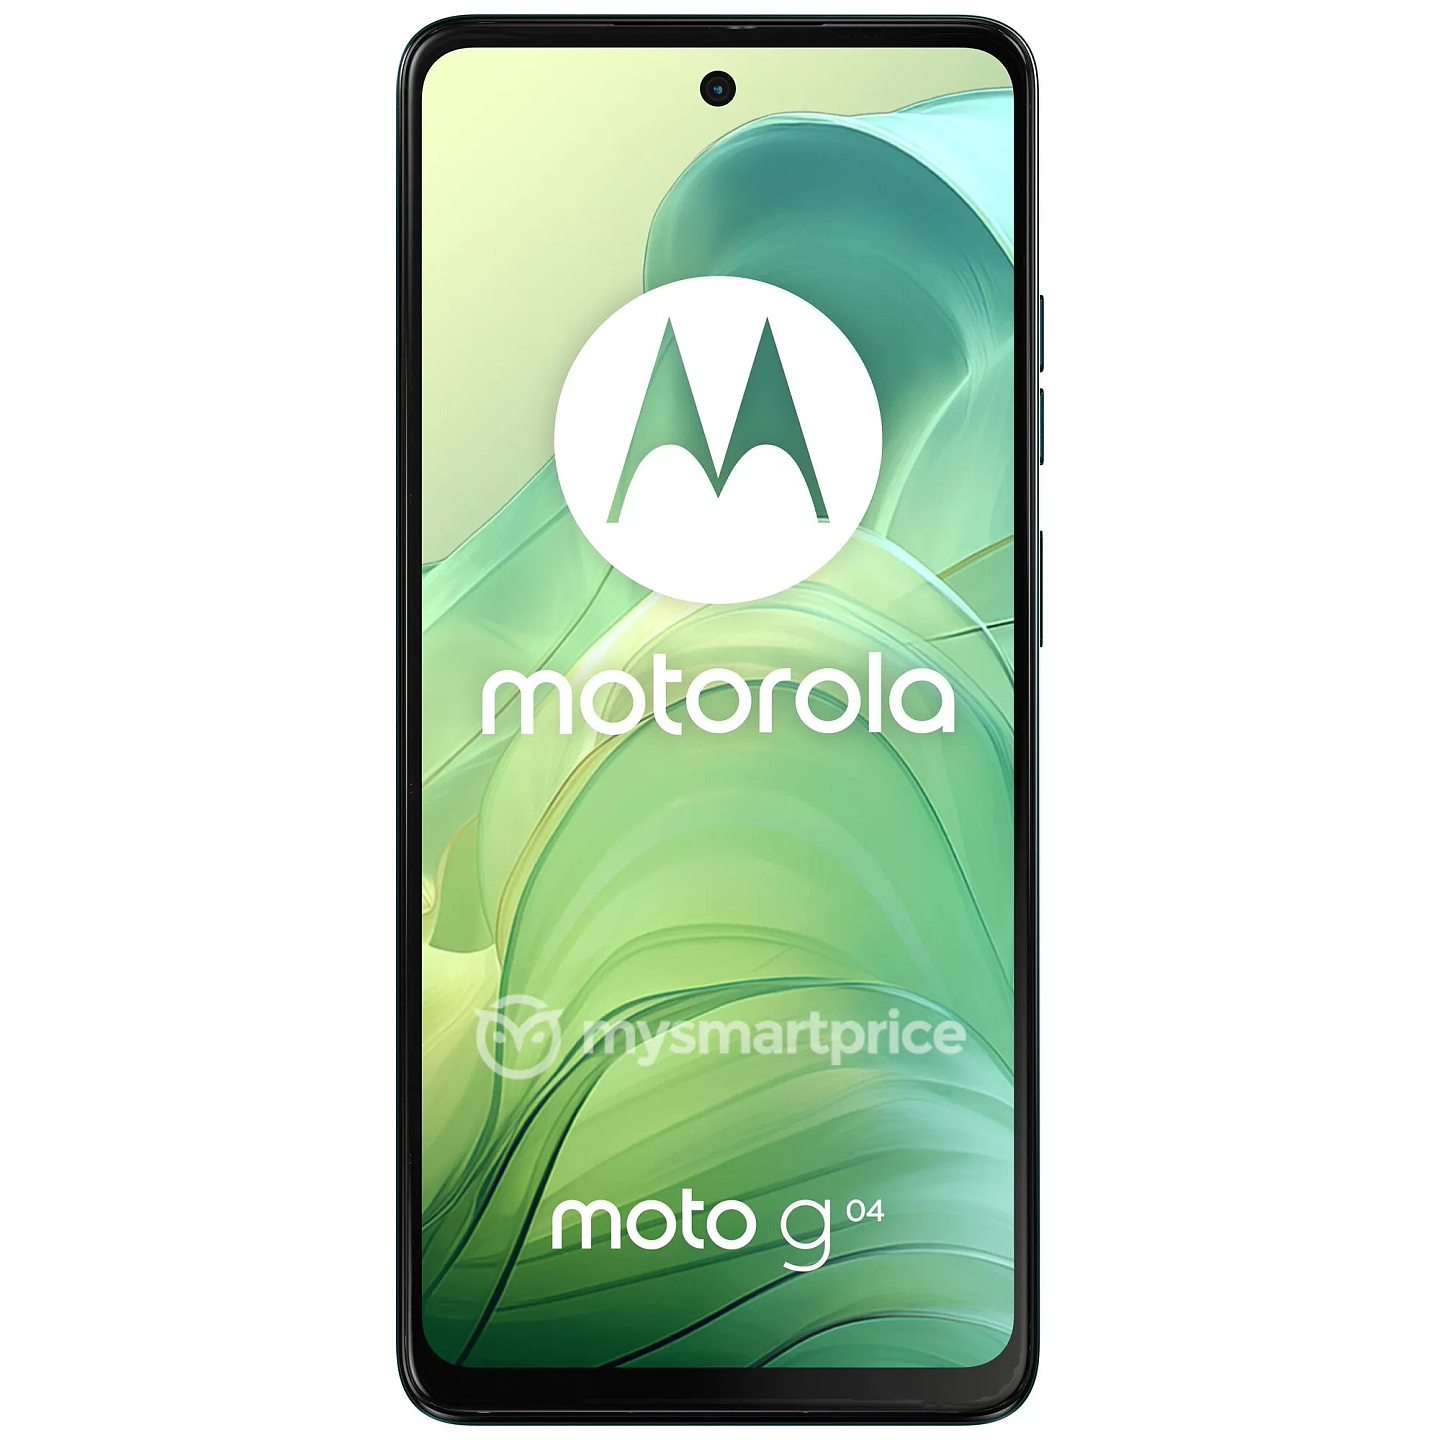 摩托罗拉 Moto G04 手机渲染图曝光：1600 万像素单摄、4 种颜色 - 16